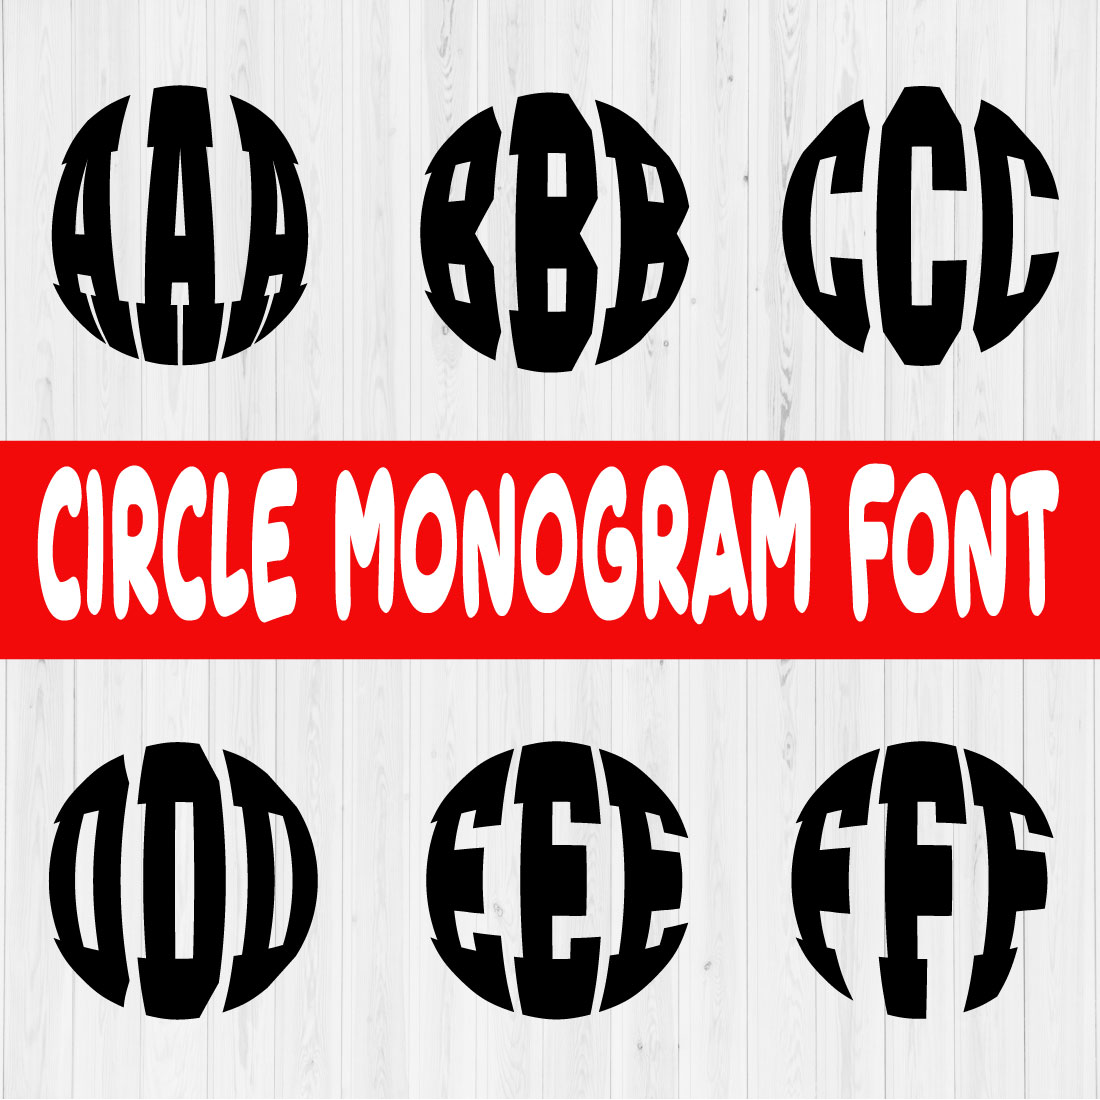 Circle Monogram Font Vol1 cover image.